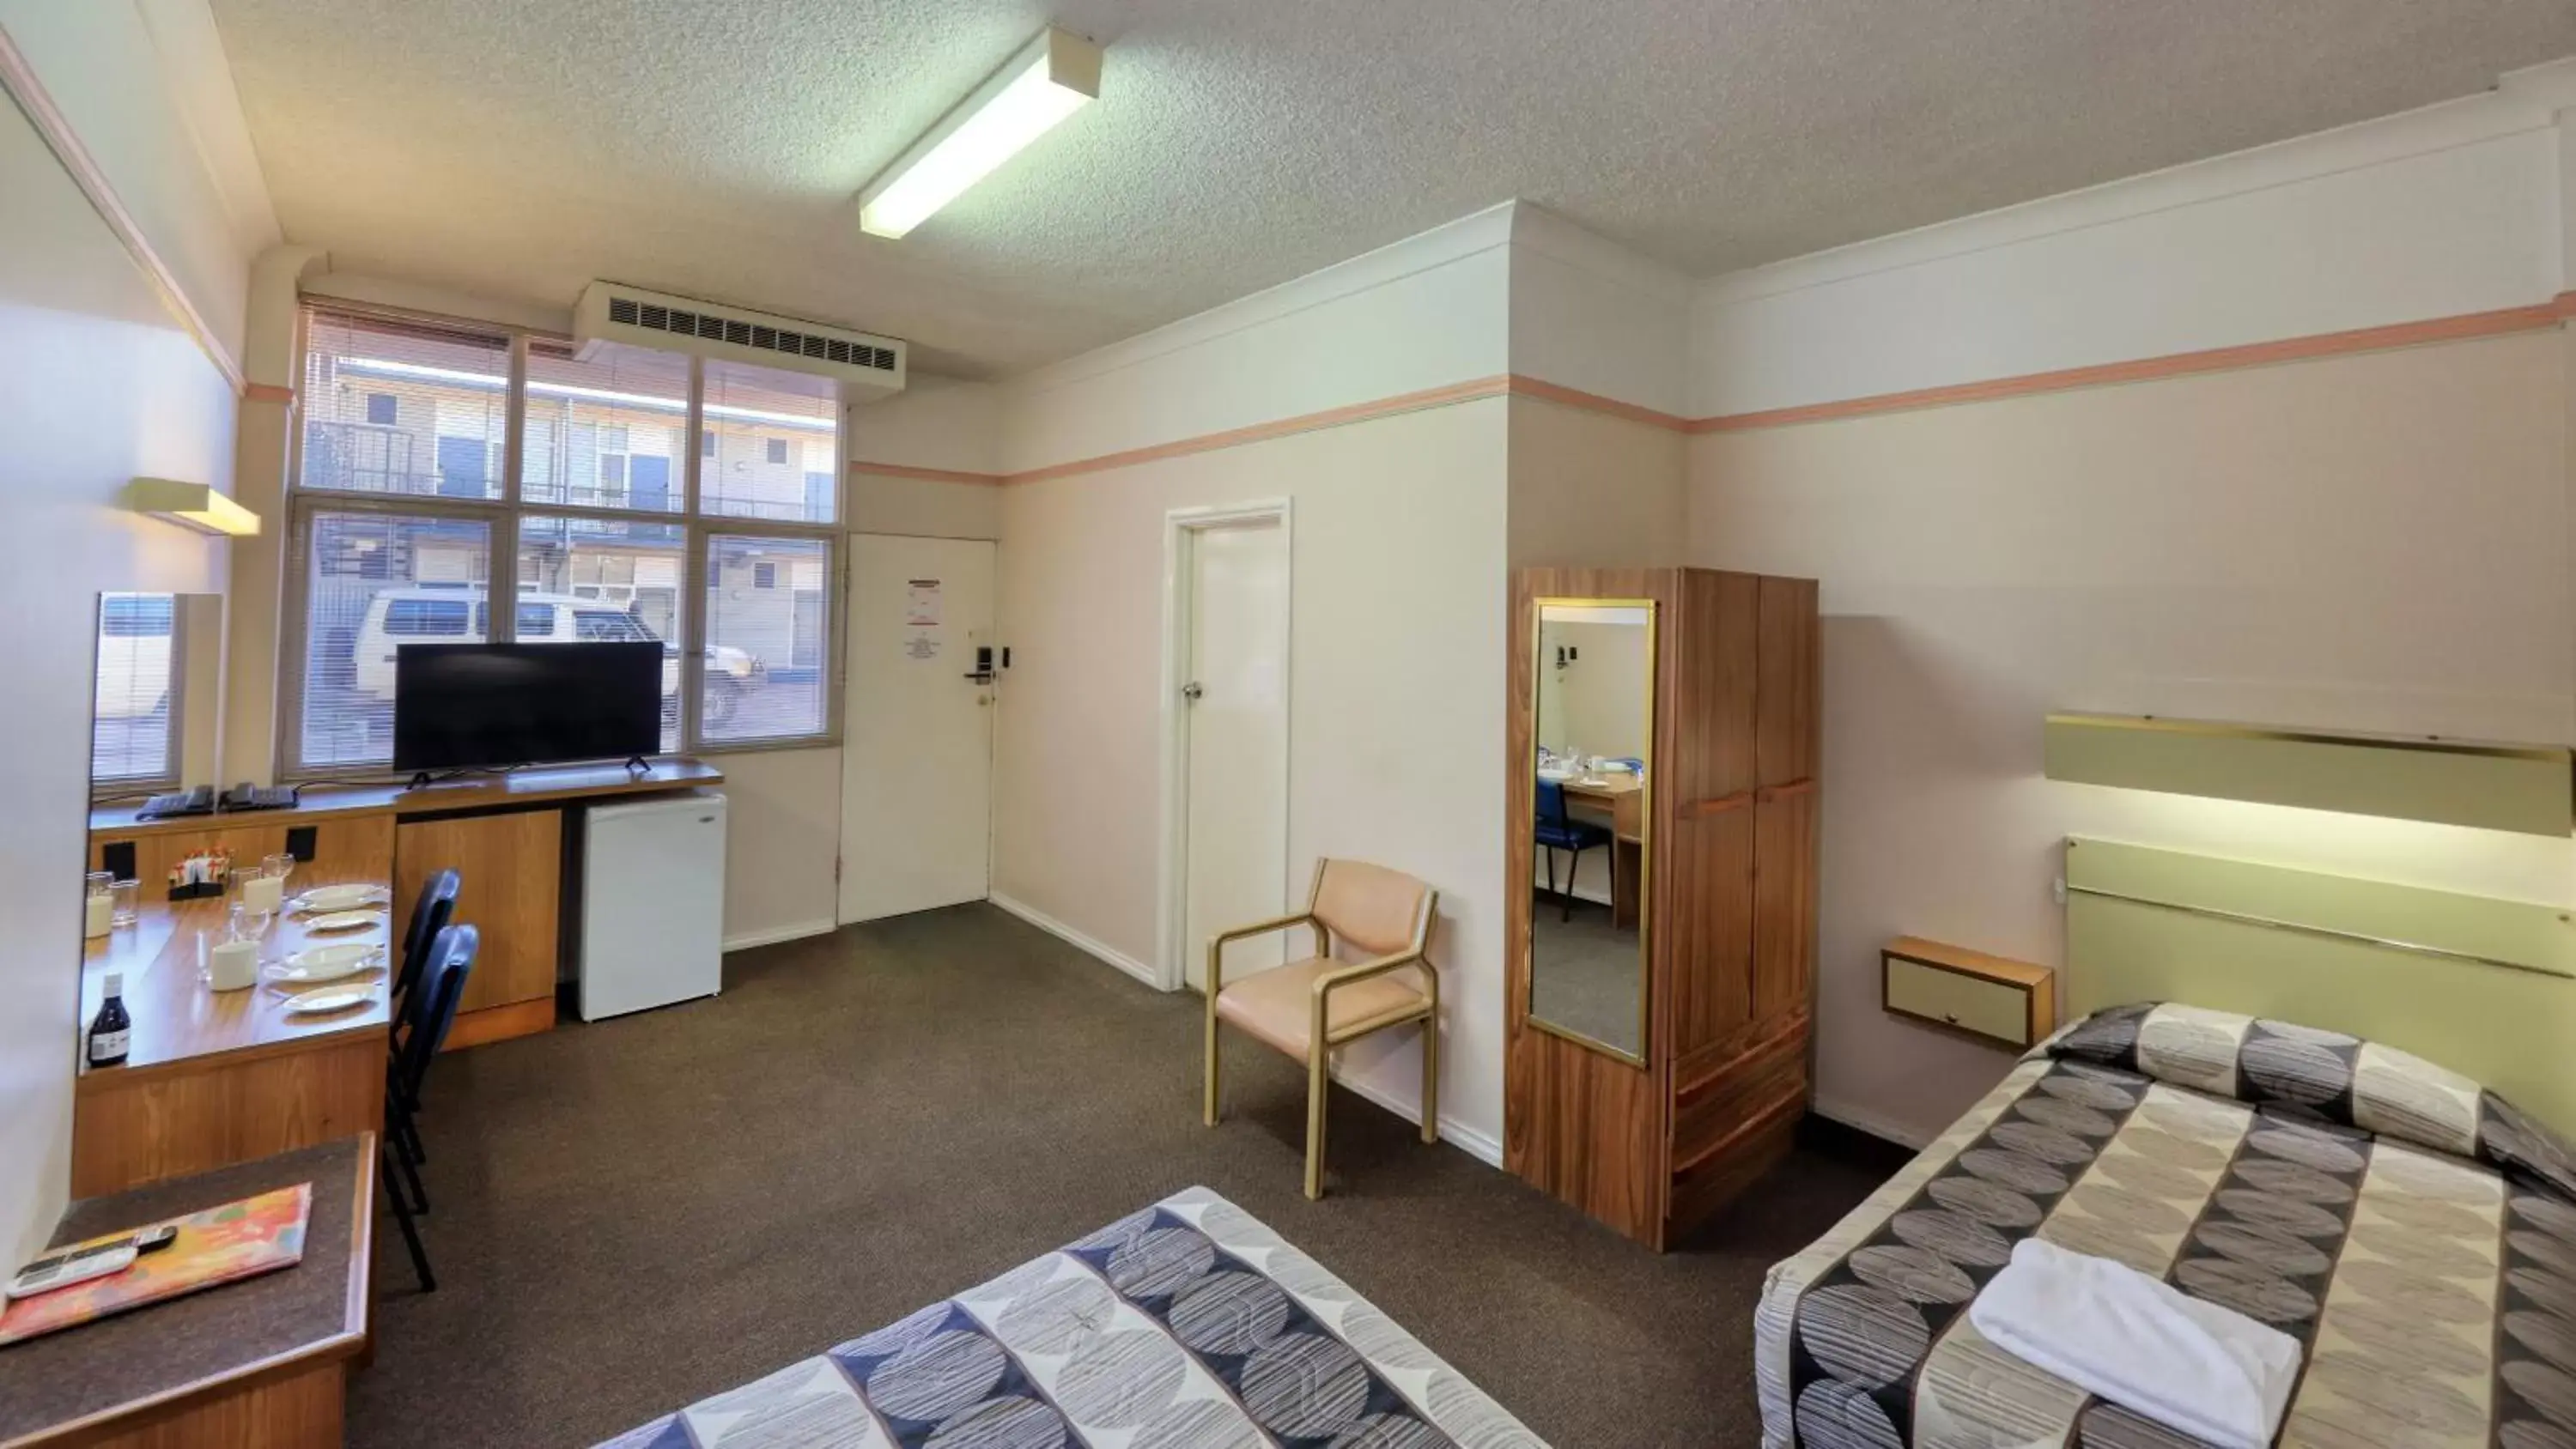 Bedroom, TV/Entertainment Center in Comfort Inn Crystal Broken Hill